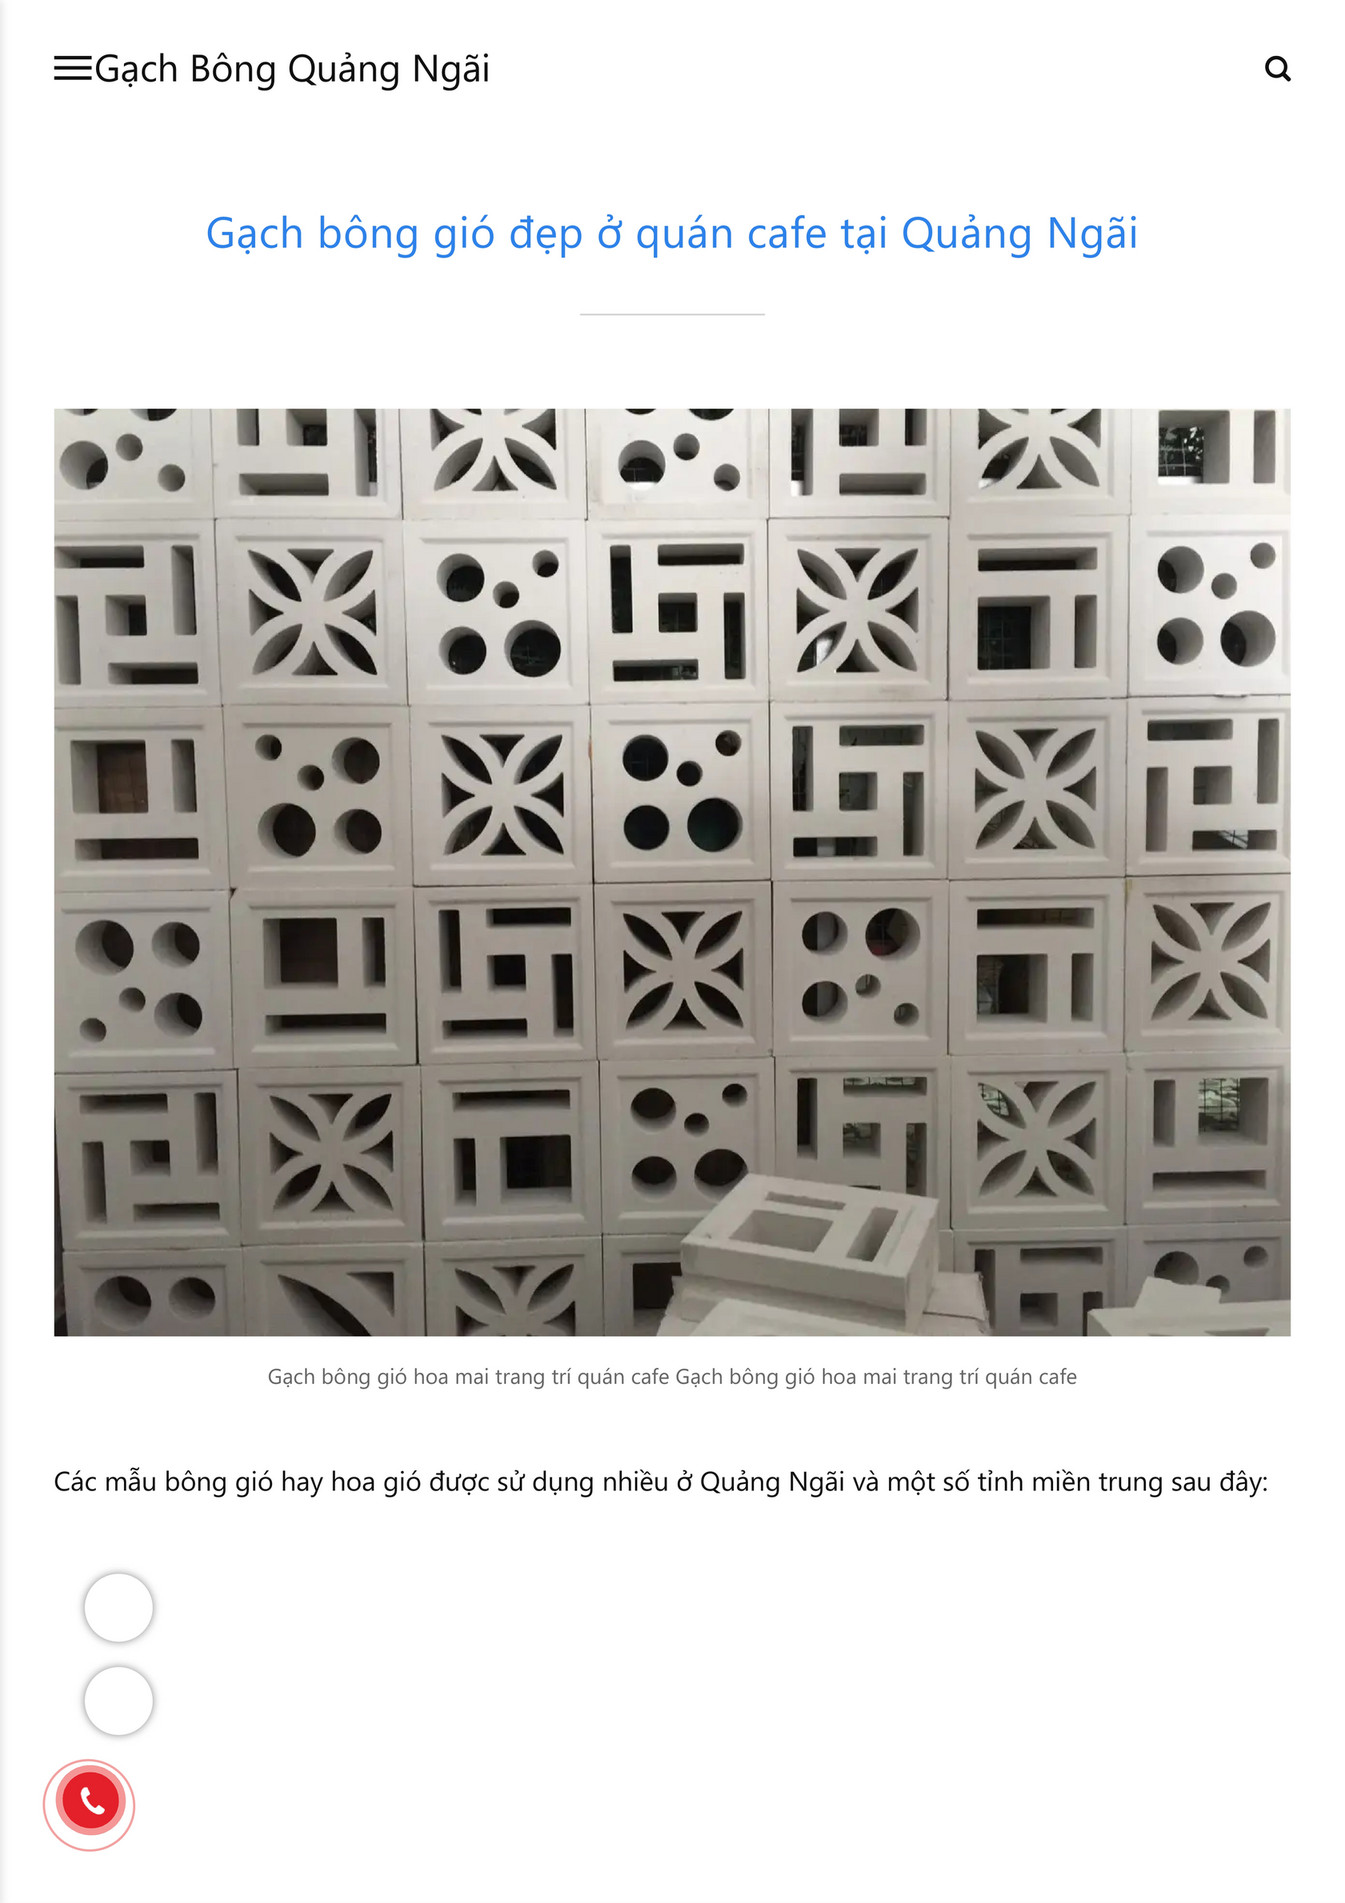 Vietnam cement tile corp - Những mẫu bông gió đẹp được sử dụng ...